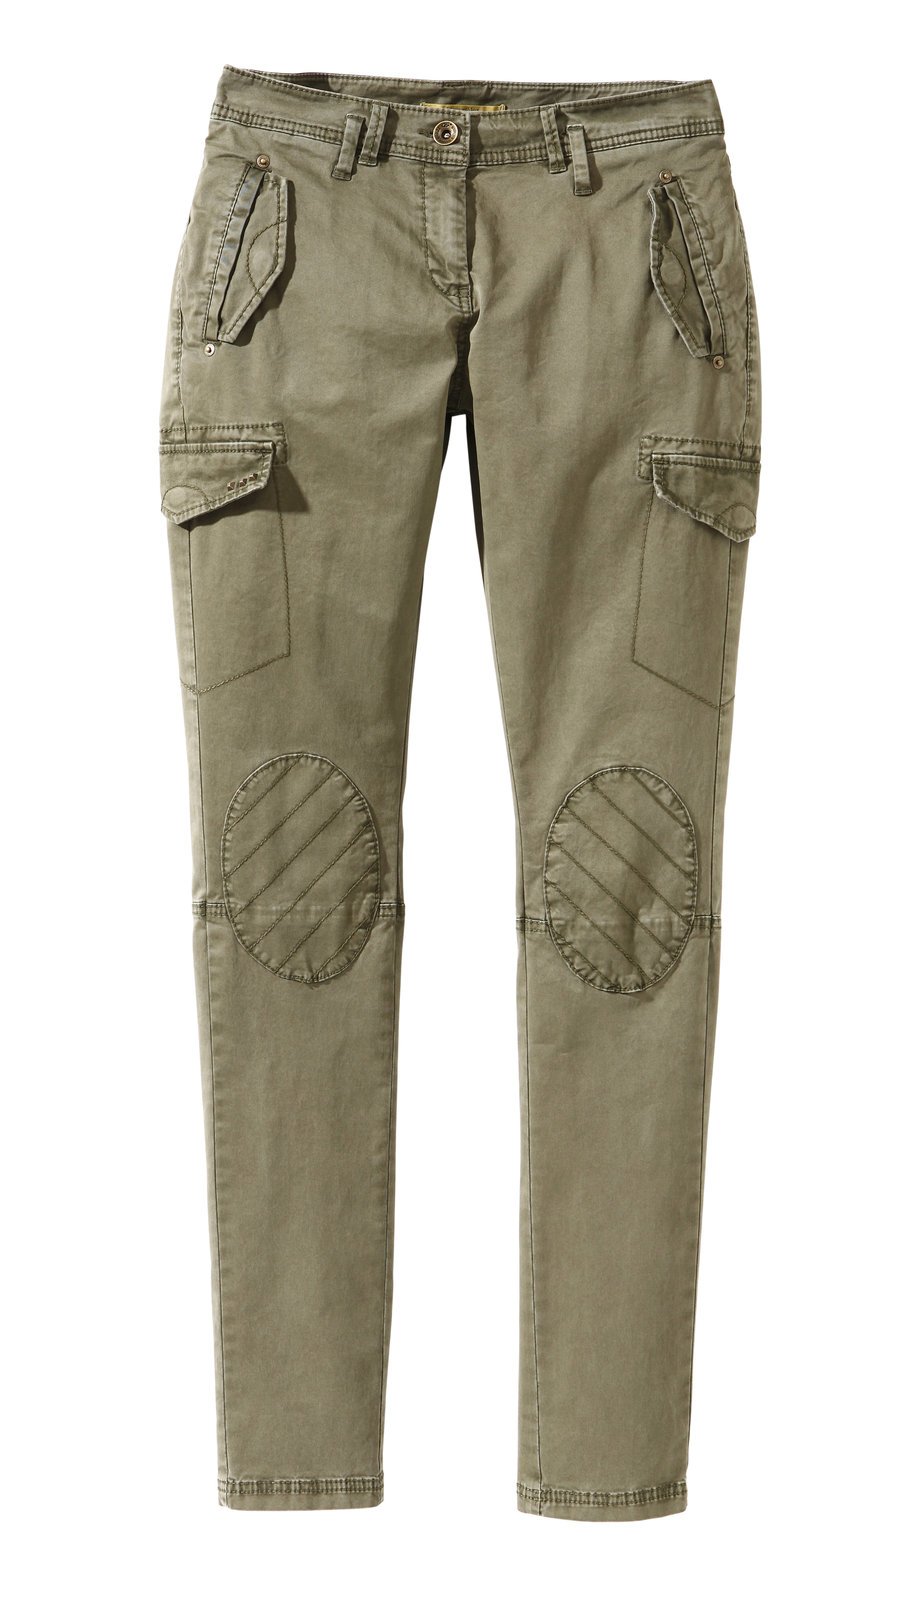 Army kalhoty, s.Oliver, 1999 Kč.